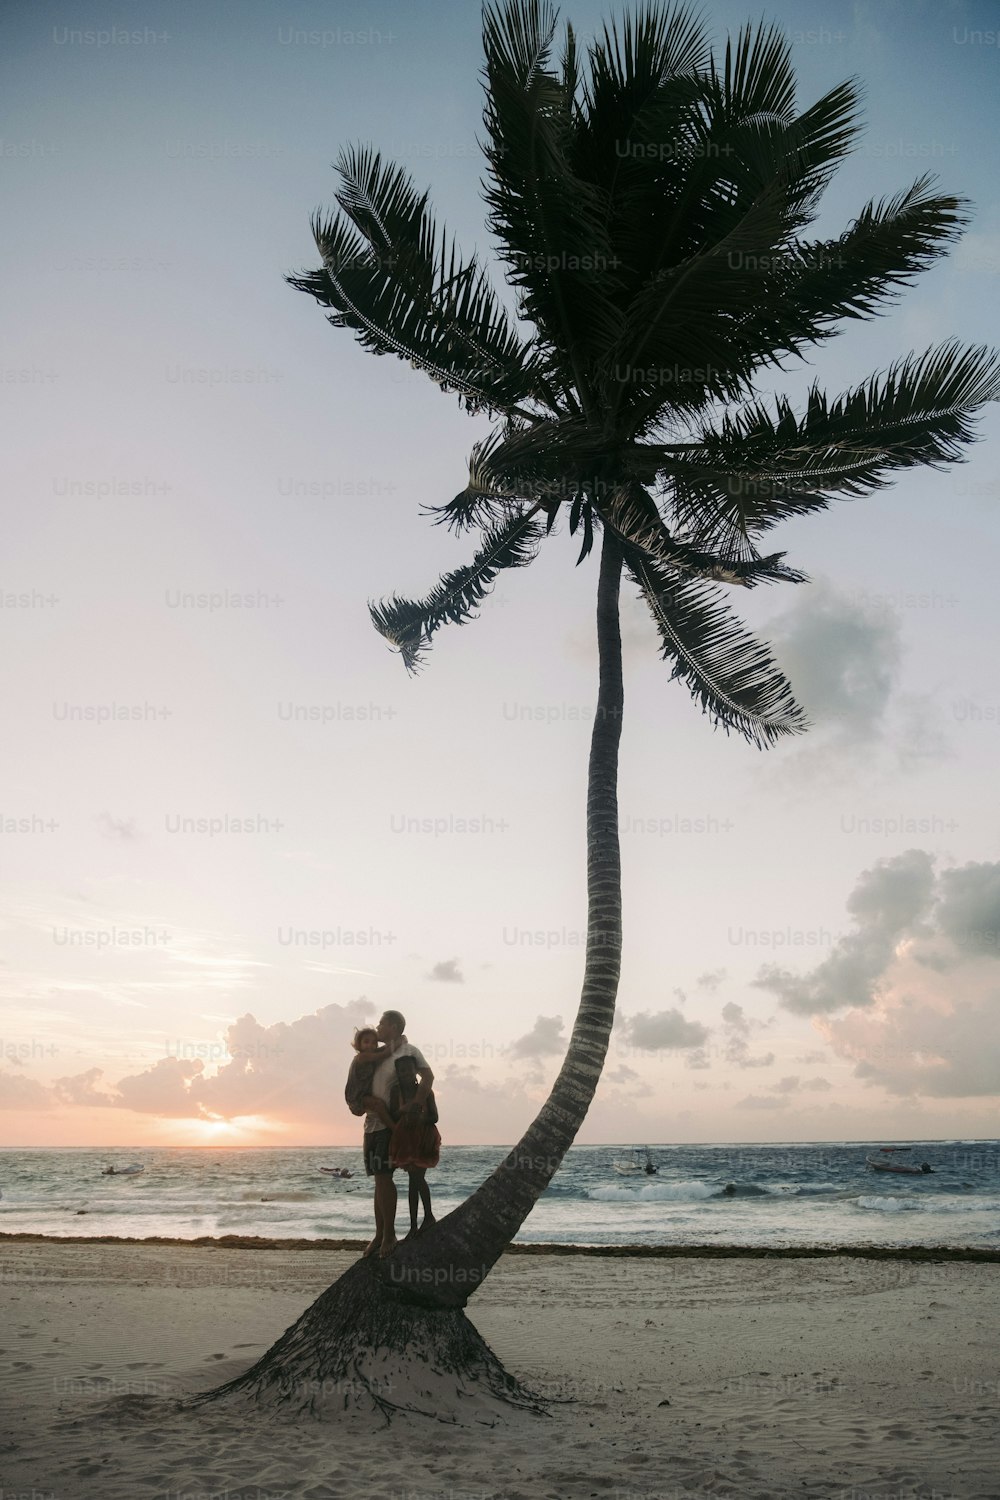 Un hombre parado en la cima de una palmera junto al océano